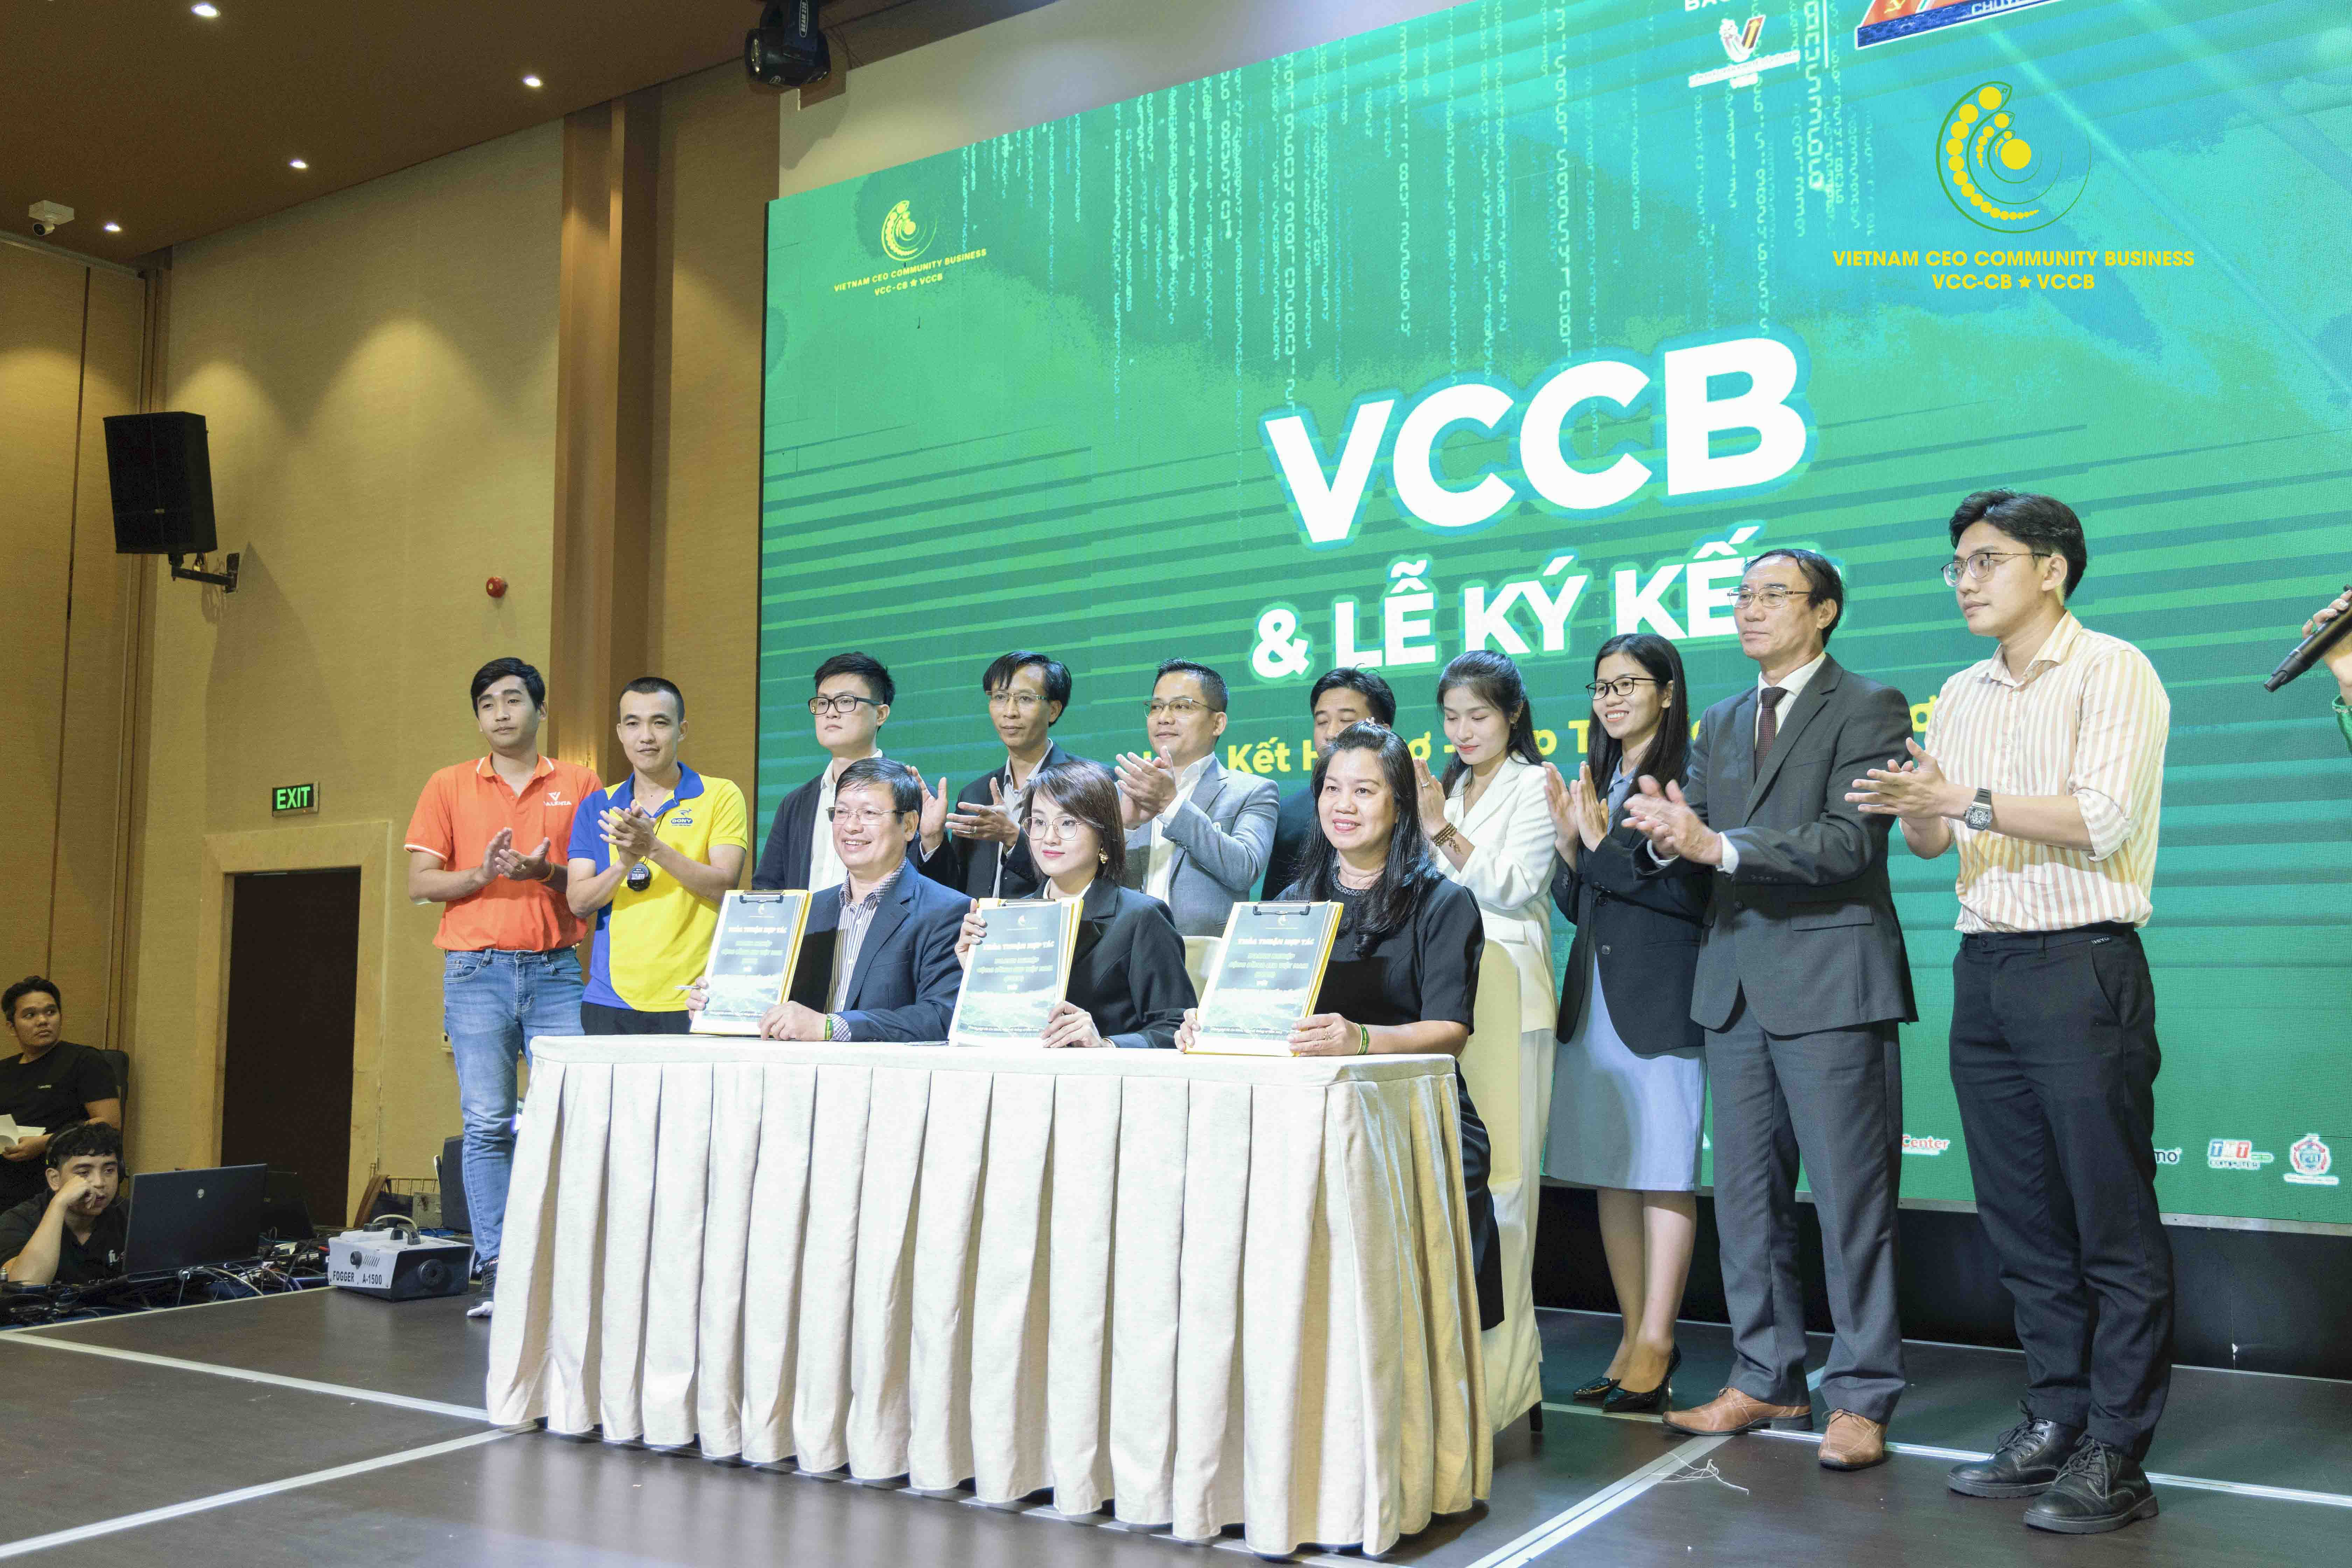 Ra mắt doanh nghiệp cộng đồng CEO Việt Nam
